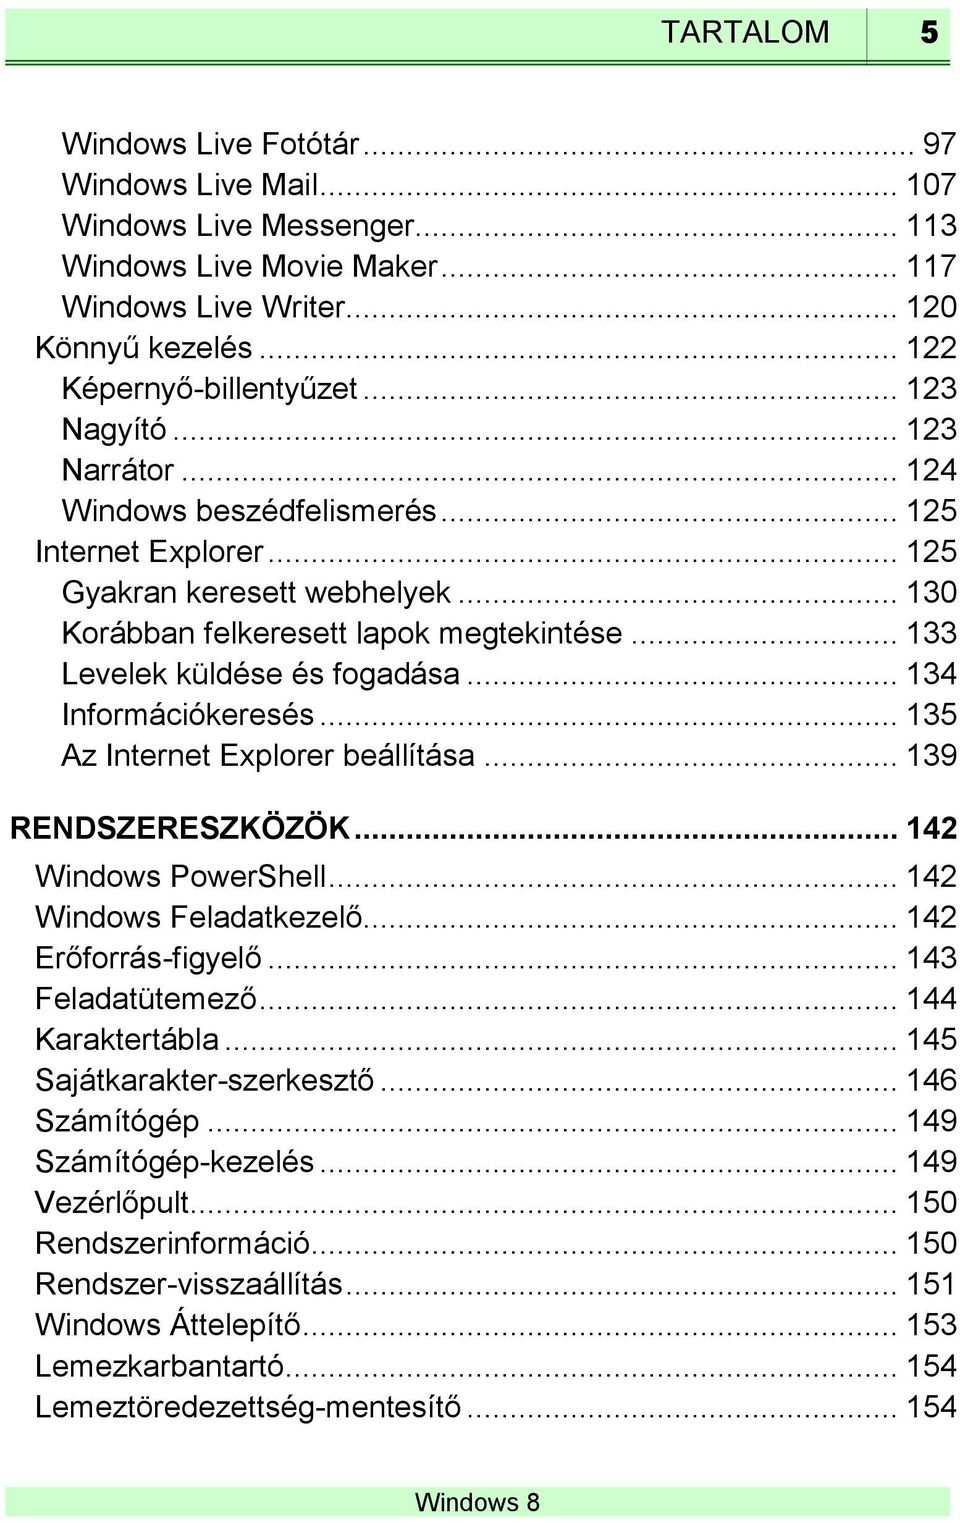 .. 133 Levelek küldése és fogadása... 134 Információkeresés... 135 Az Internet Explorer beállítása... 139 RENDSZERESZKÖZÖK... 142 Windows PowerShell... 142 Windows Feladatkezelő.